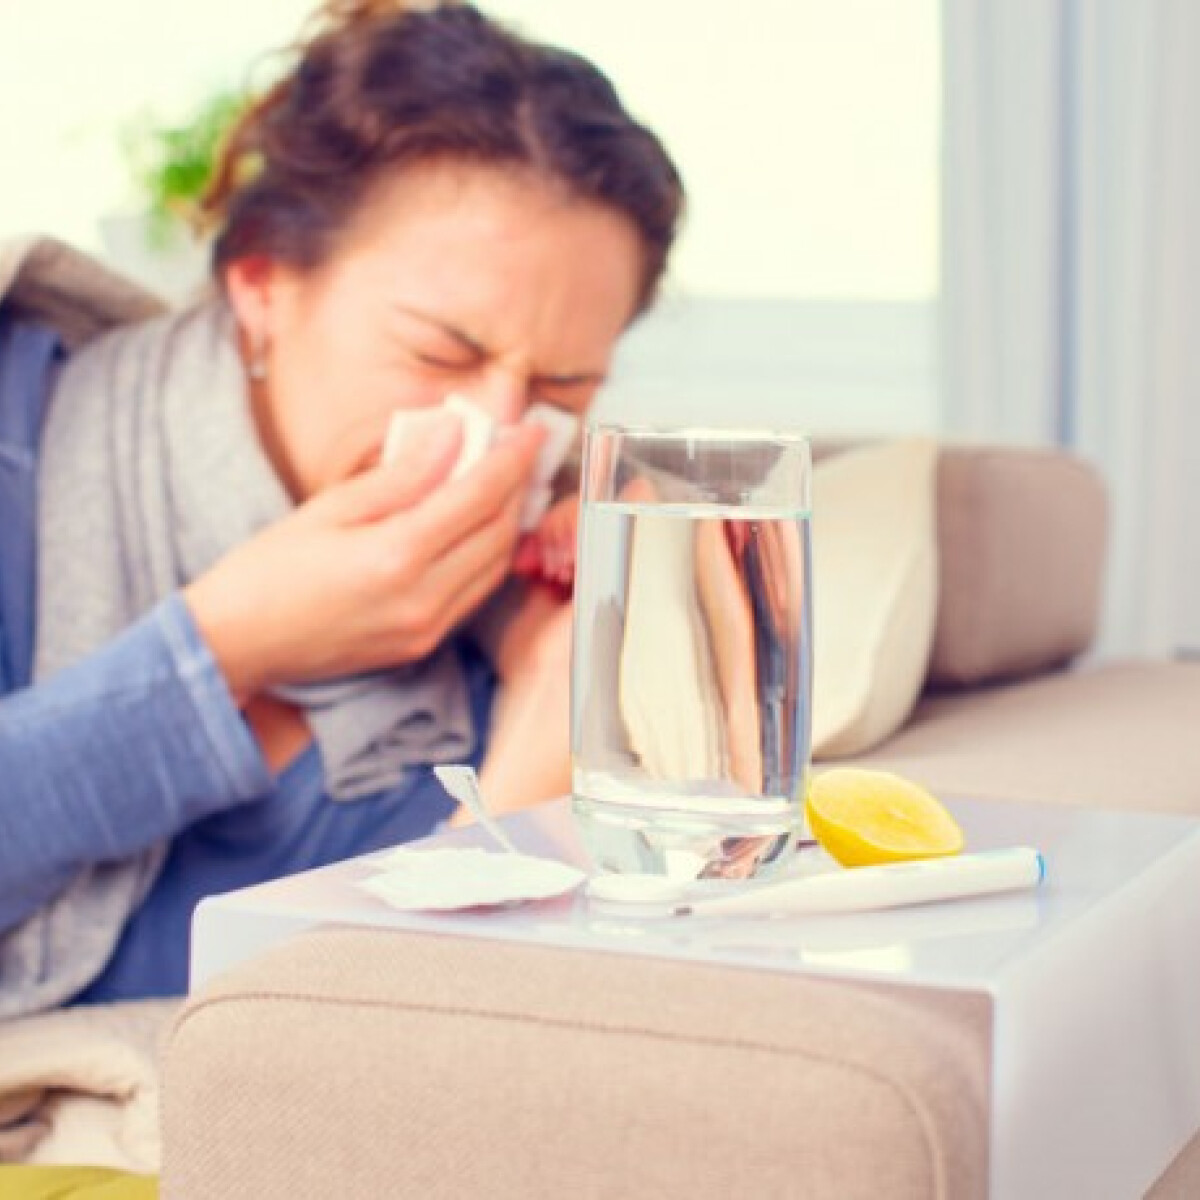 Influenzás vagy vagy csak megfáztál? Orvos szakértőnk segít eldönteni